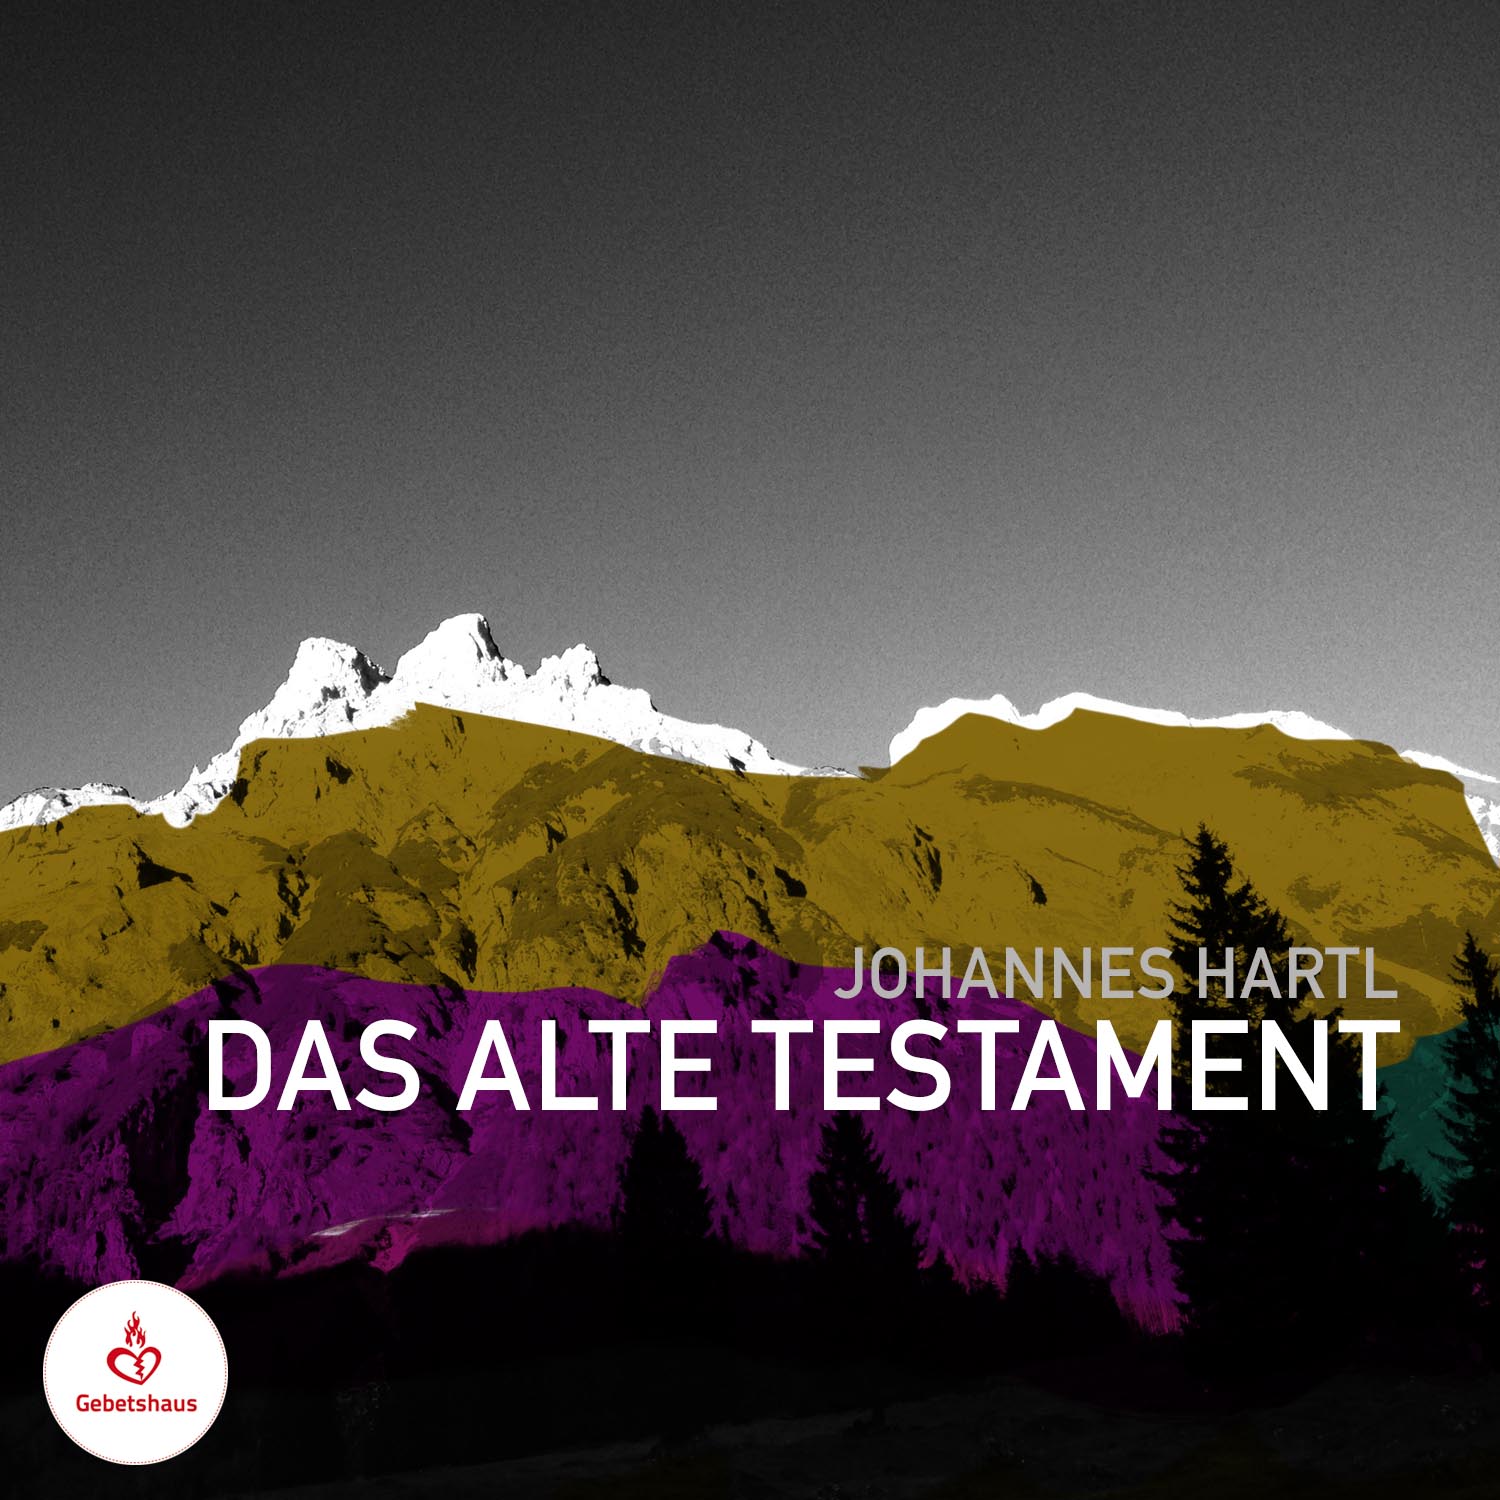 2017-07-20-Das-alte-Testament-Johannes-Hartl-1500x1500_klein.jpg